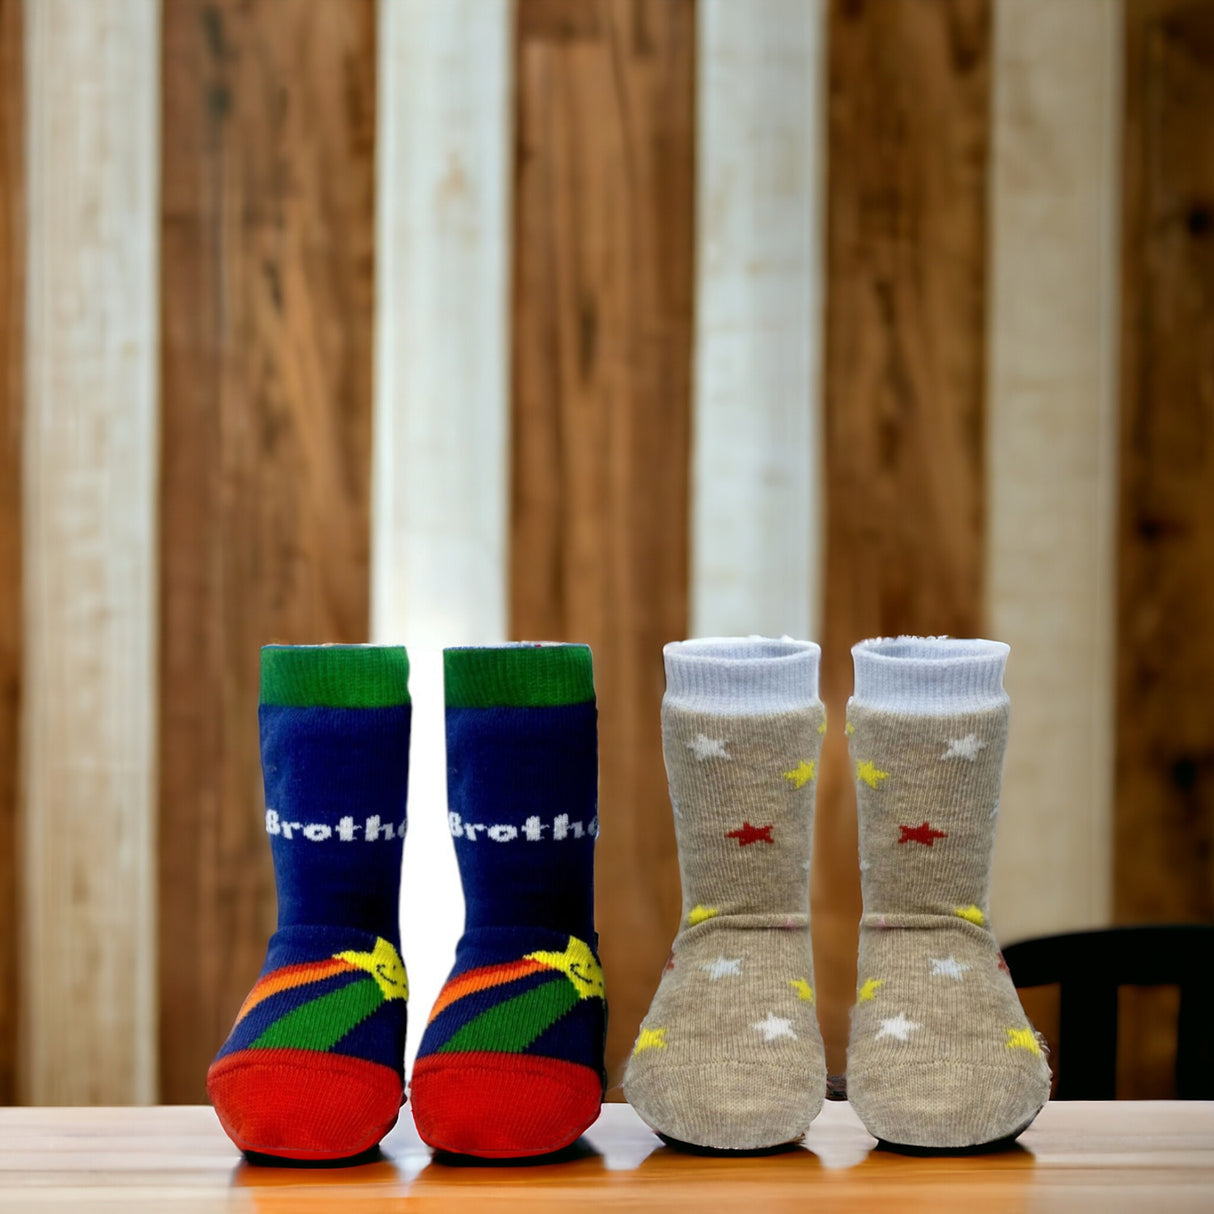 Bester Bruder Cucamelon Socken Kindersocken für 2-4-Jährige mit Geschenkverpackung (5 Paare)